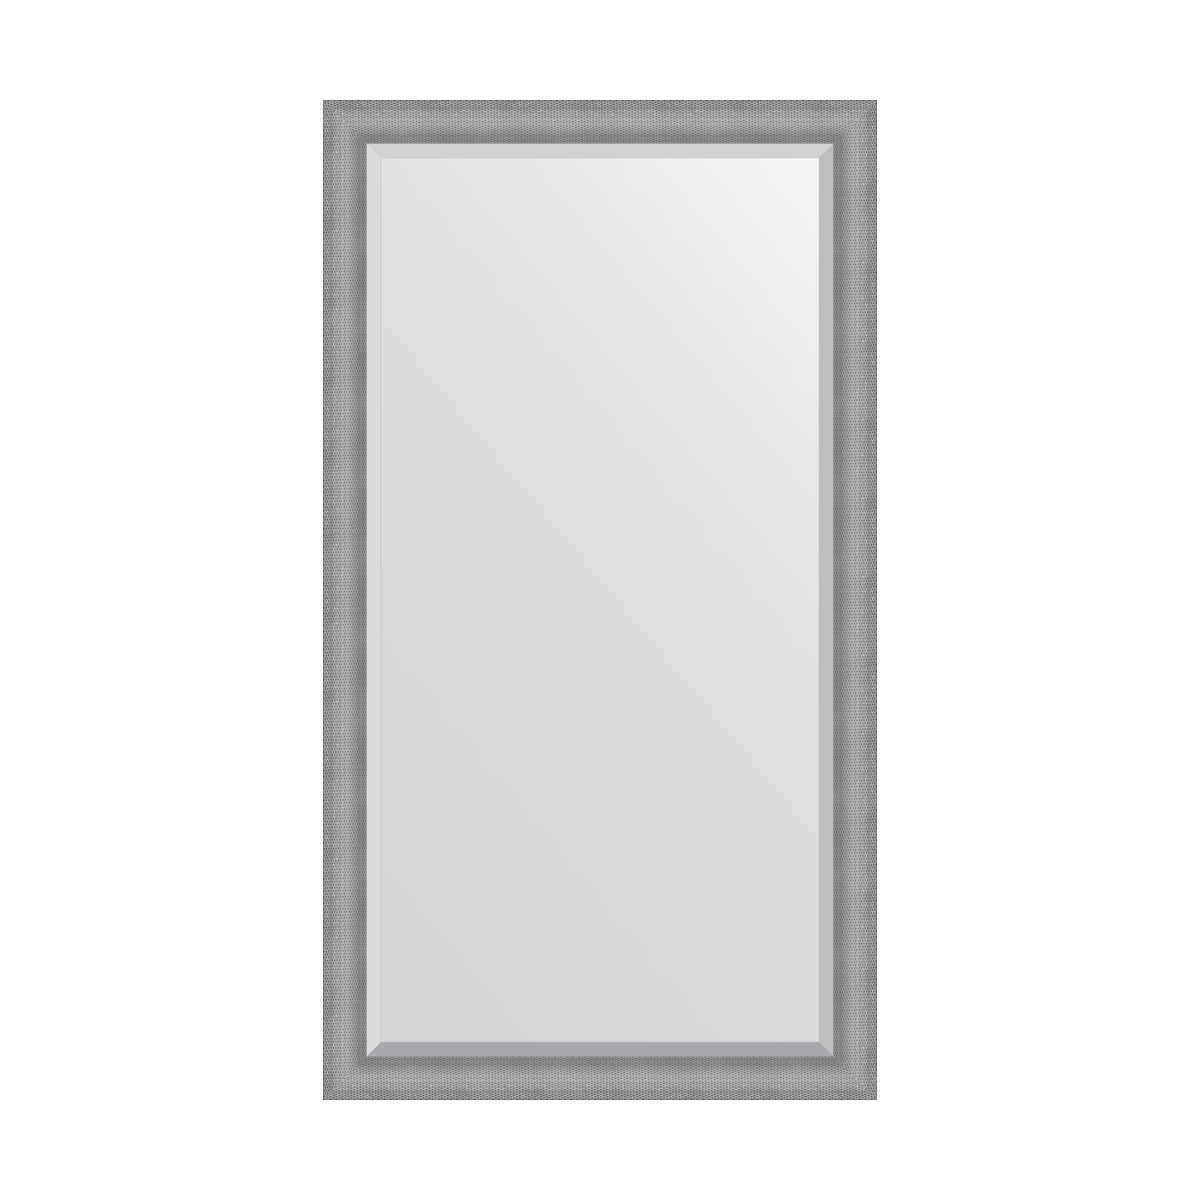 Зеркало напольное с фацетом в багетной раме Evoform серебряная кольчуга 88 мм 112x202 см зеркало напольное с гравировкой в багетной раме evoform серебряная кольчуга 88 мм 112x202 см